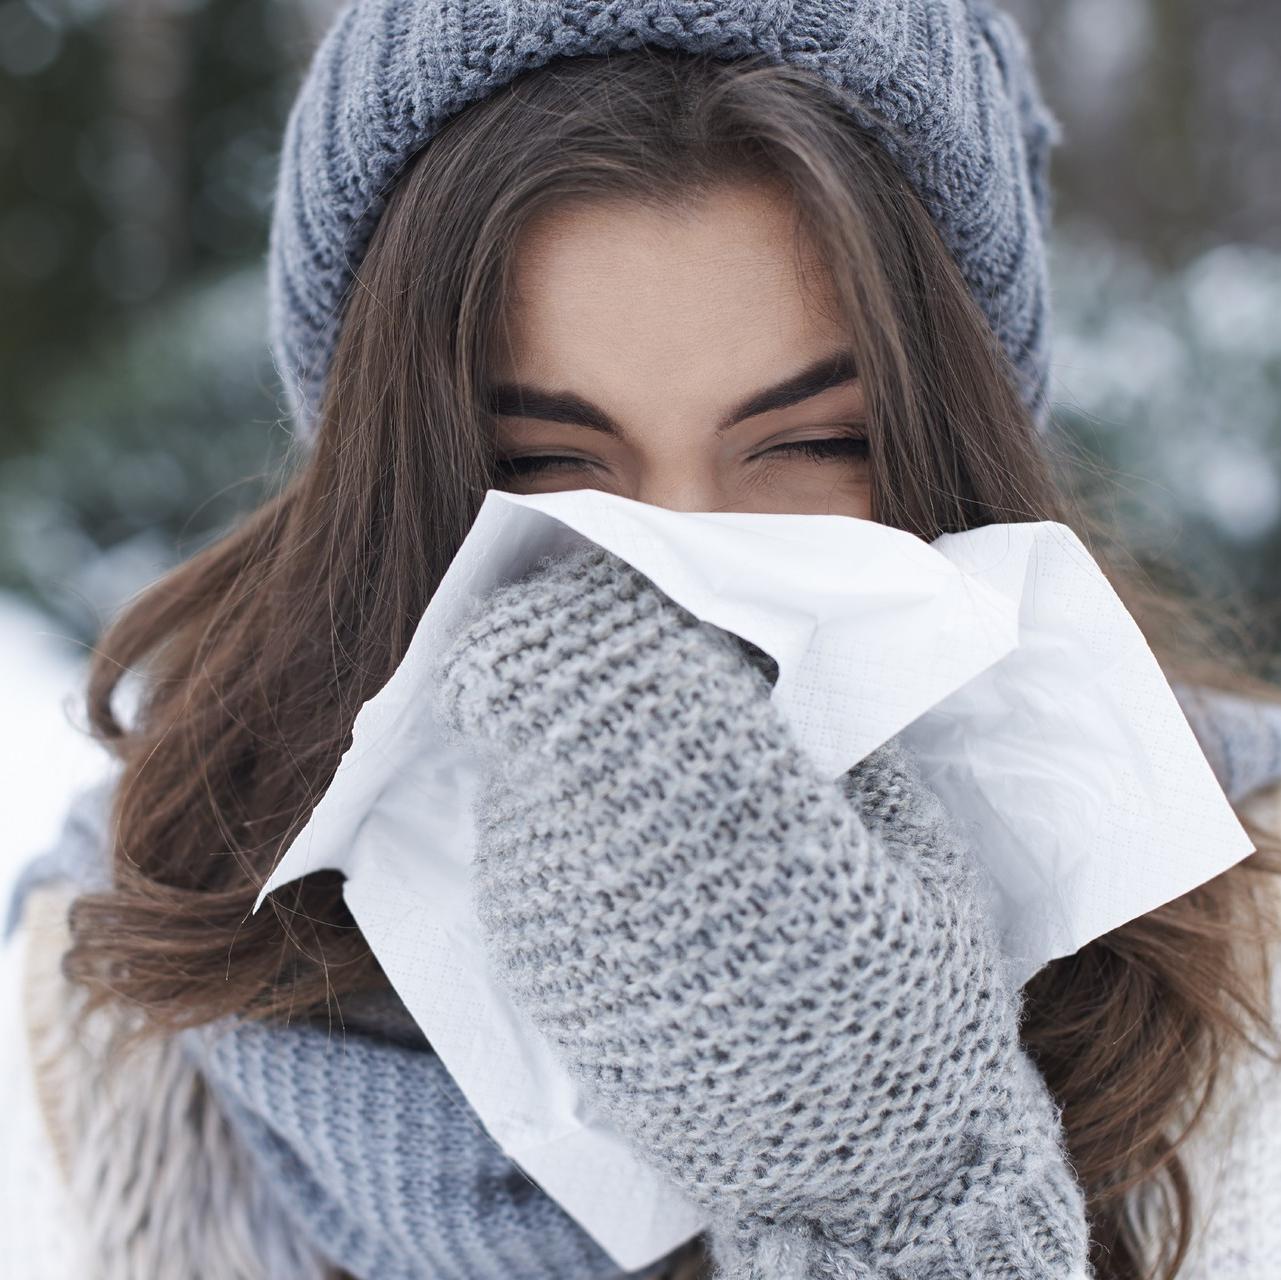 Virus saisonniers de l’hiver : les gestes simples pour éviter la contamination